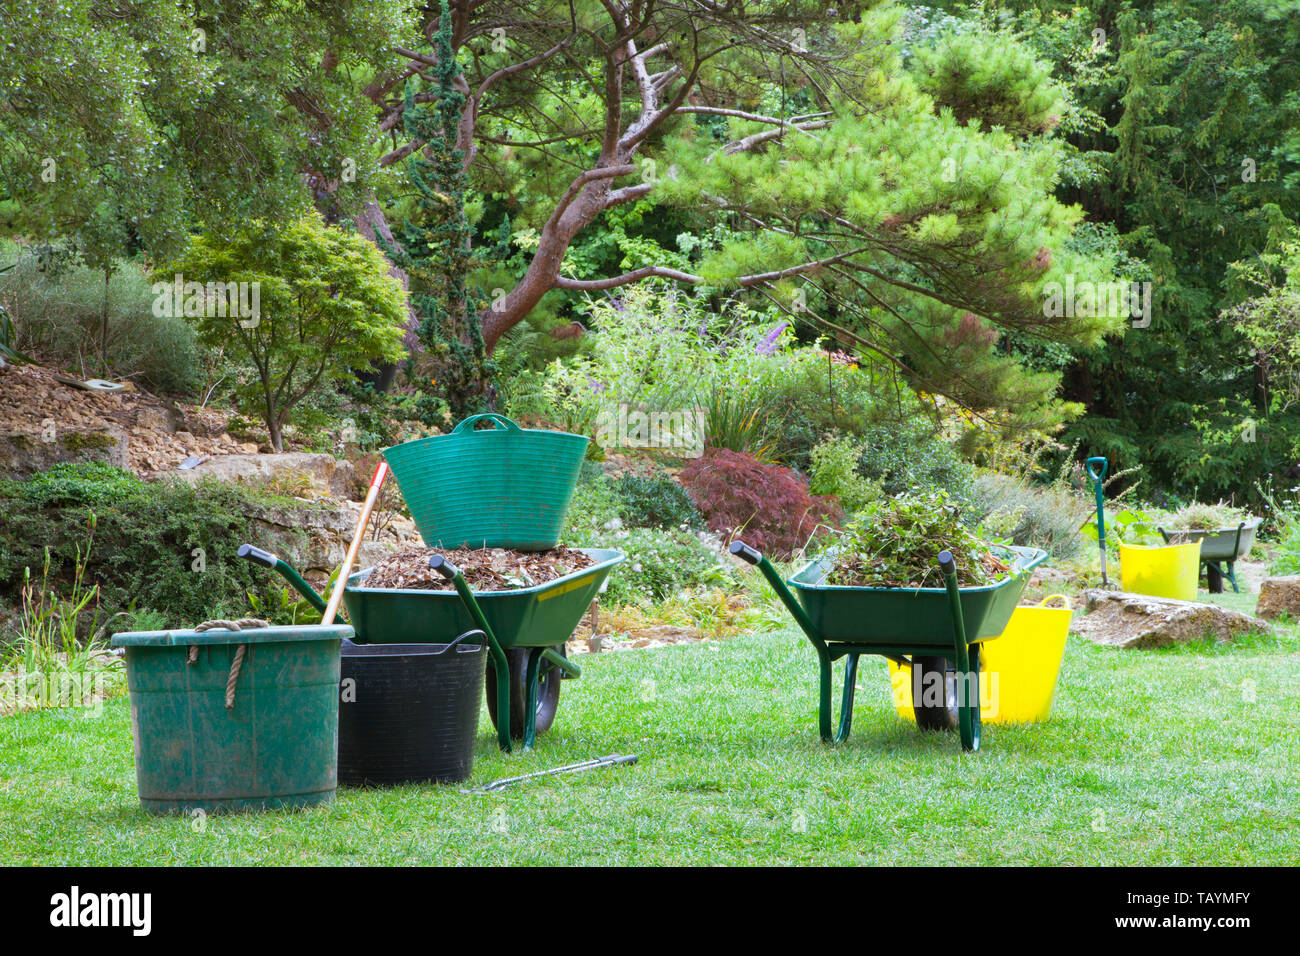 Gartenarbeit in einem angelegten Garten mit Schubkarren, Eimer voller Blätter und Unkraut. Stockfoto